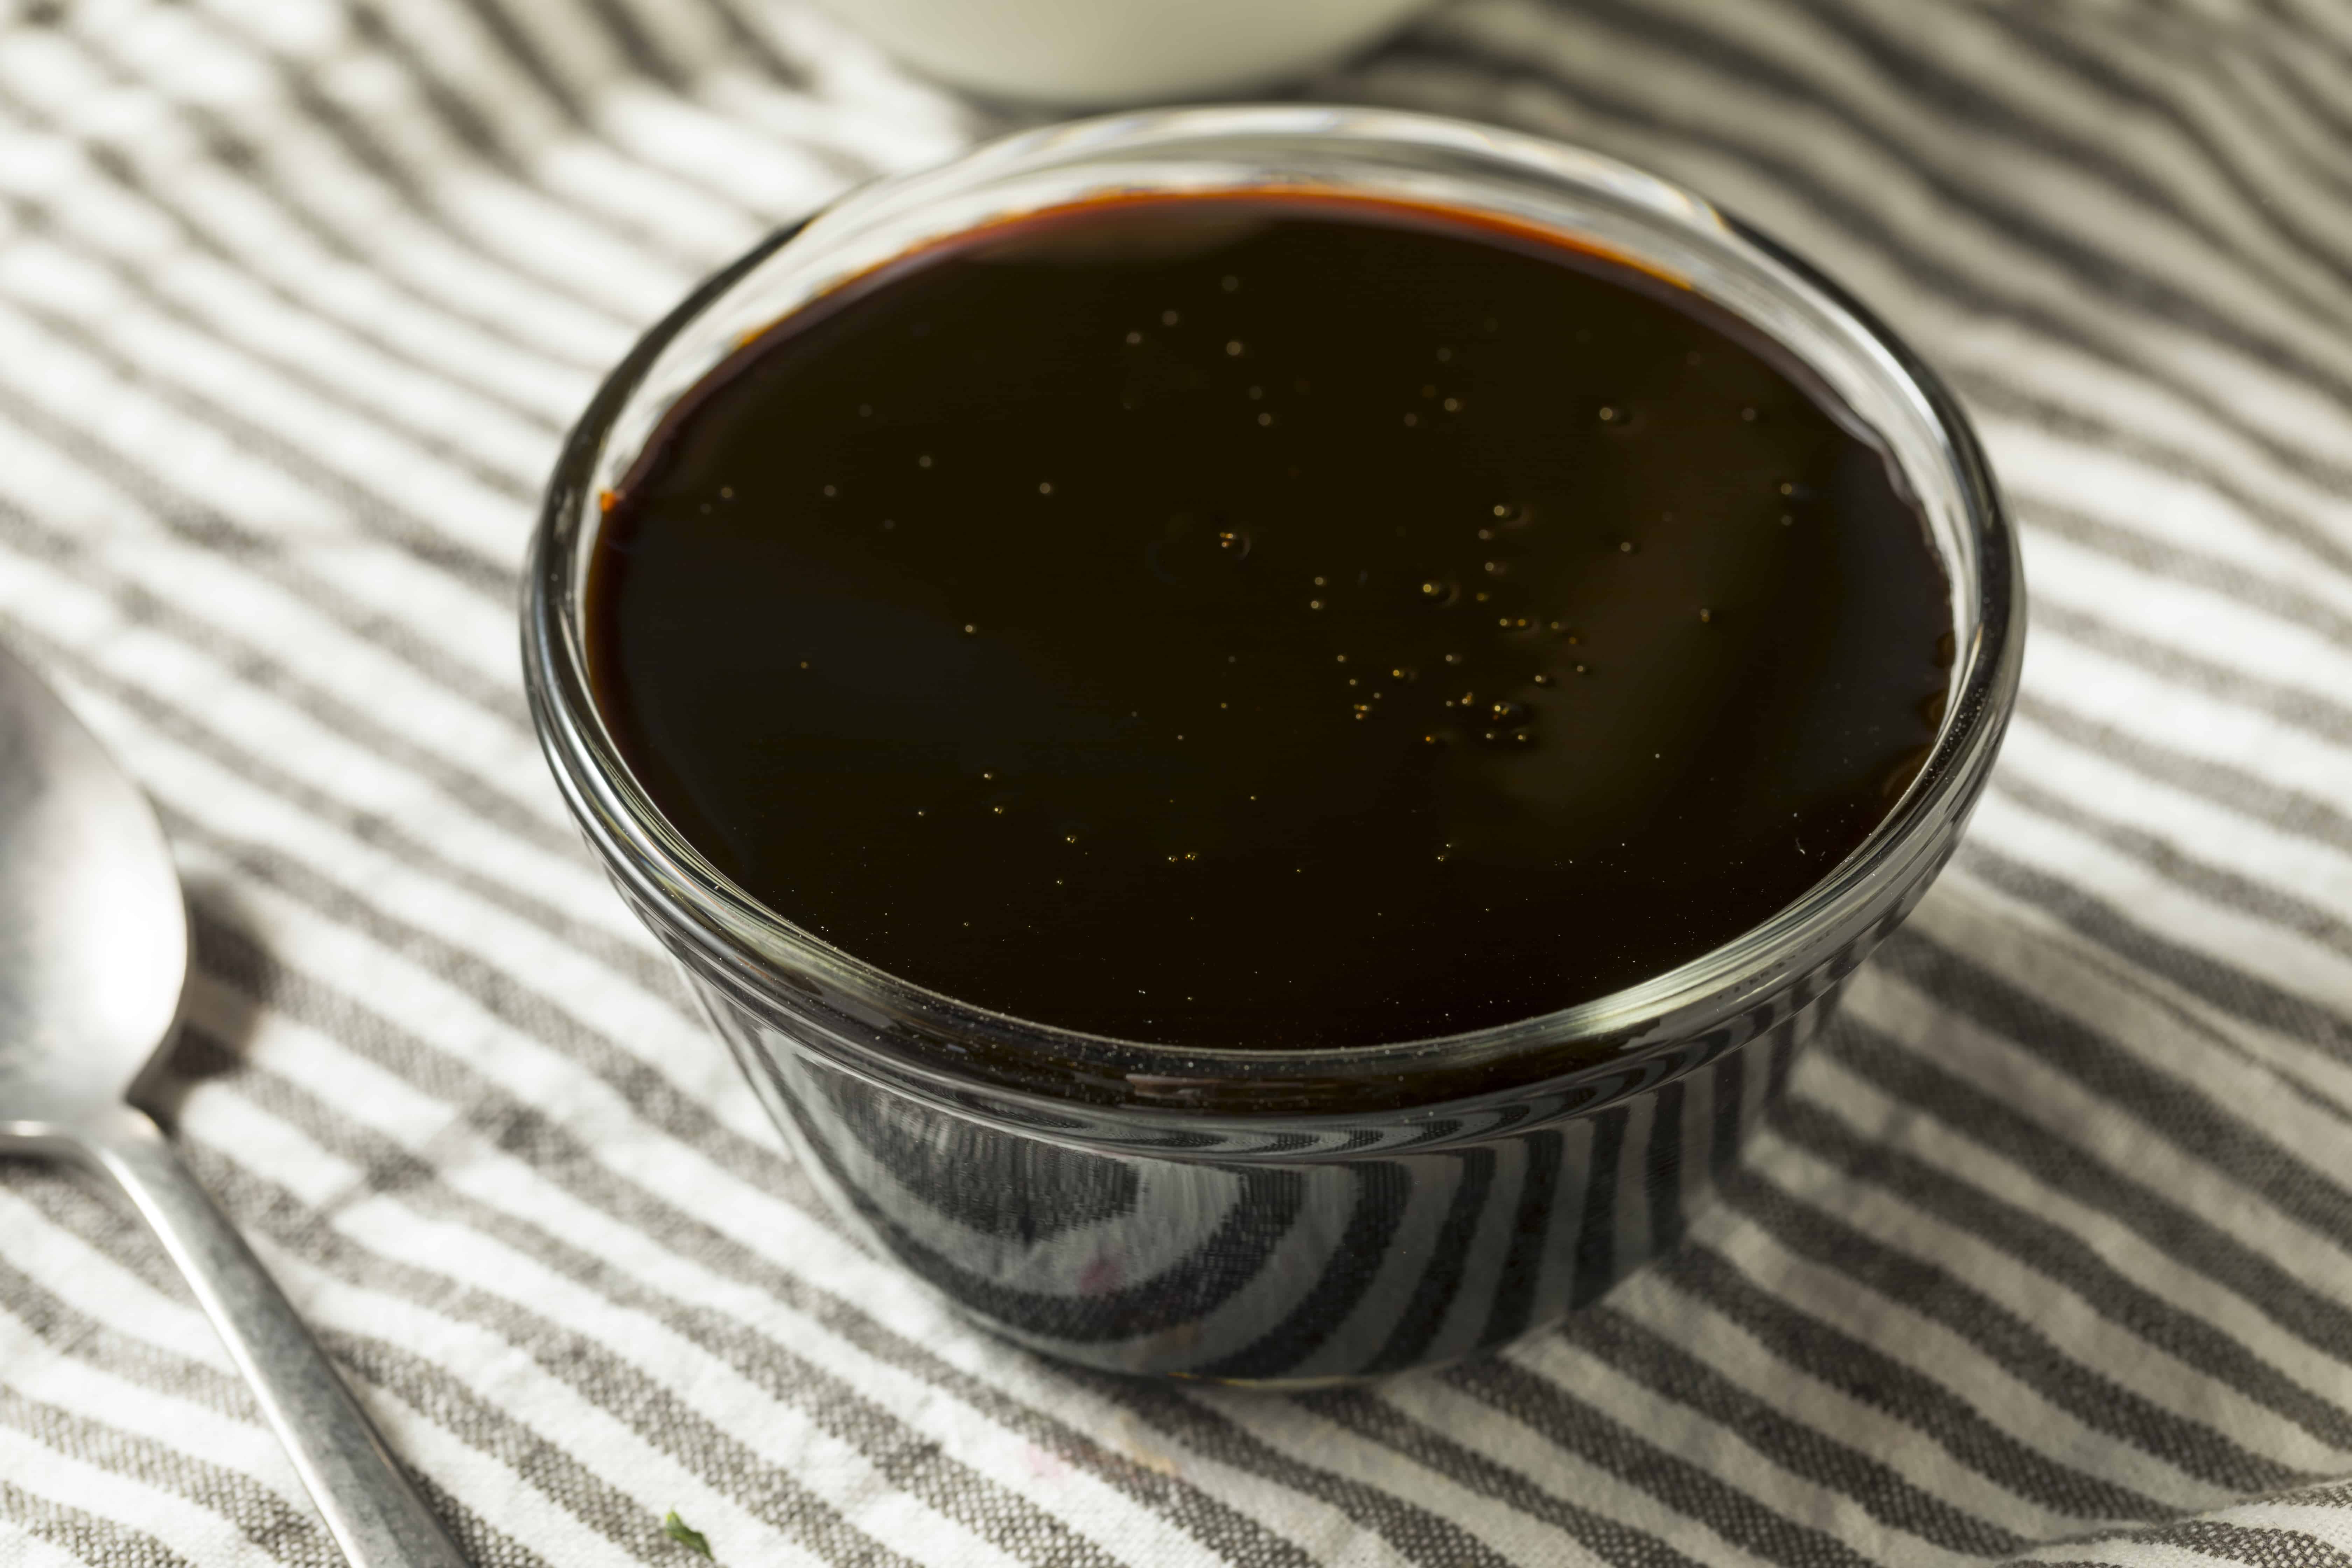 Black Cane Sugar Molasses in a Bowl